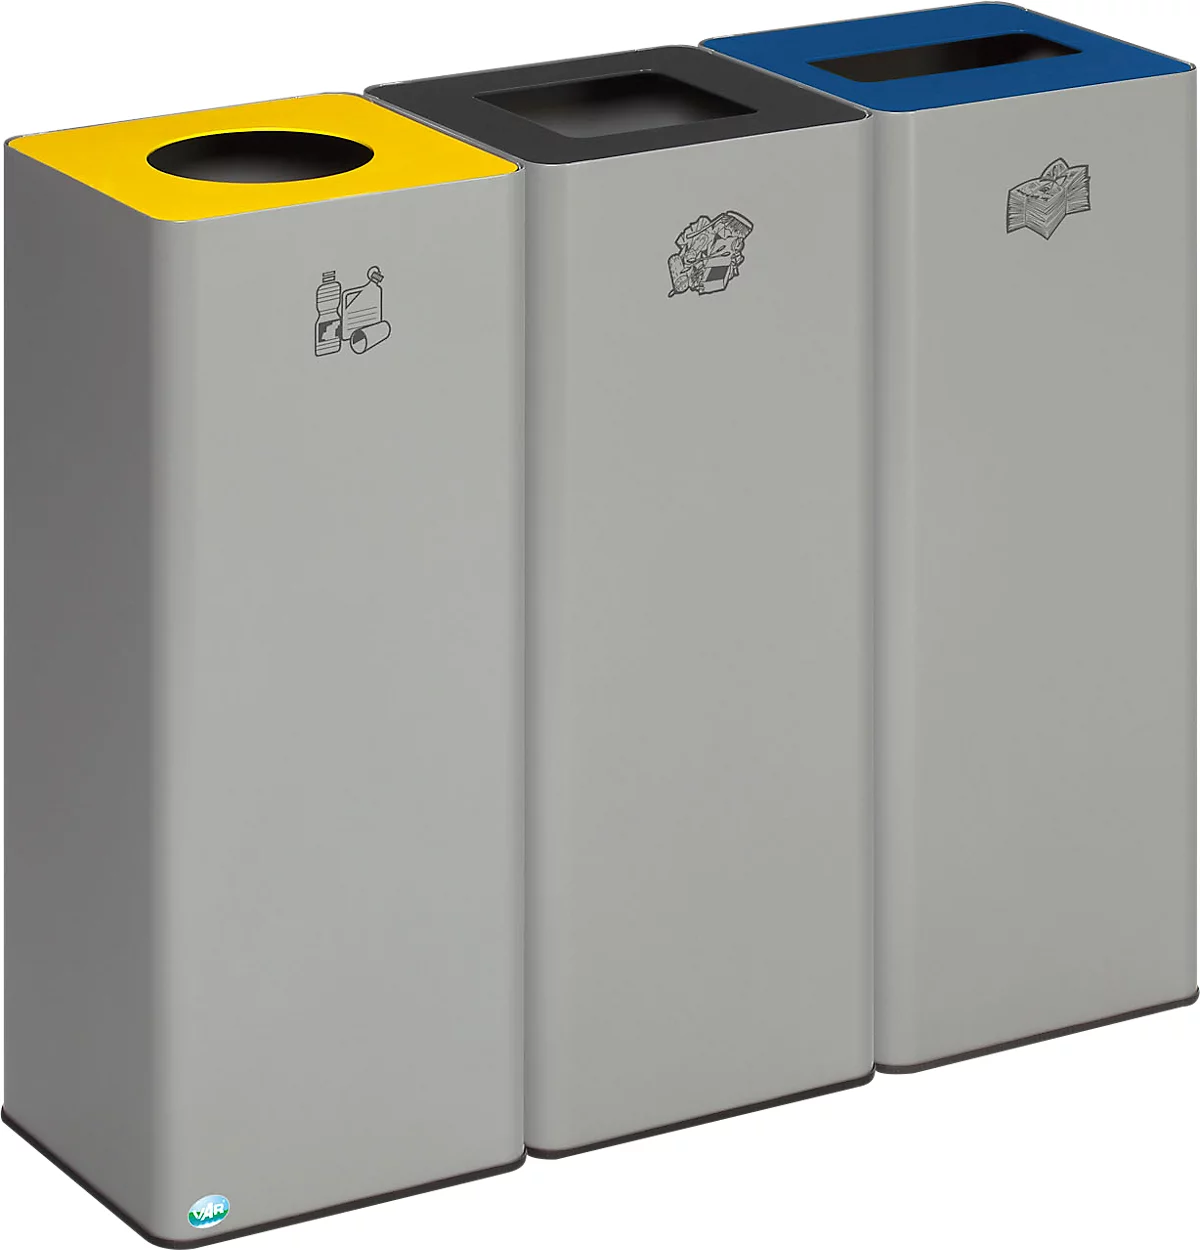 Colector de residuos reciclables VAR Quadro, 3 compartimentos, volumen total 243 l, chapa de acero galvanizada